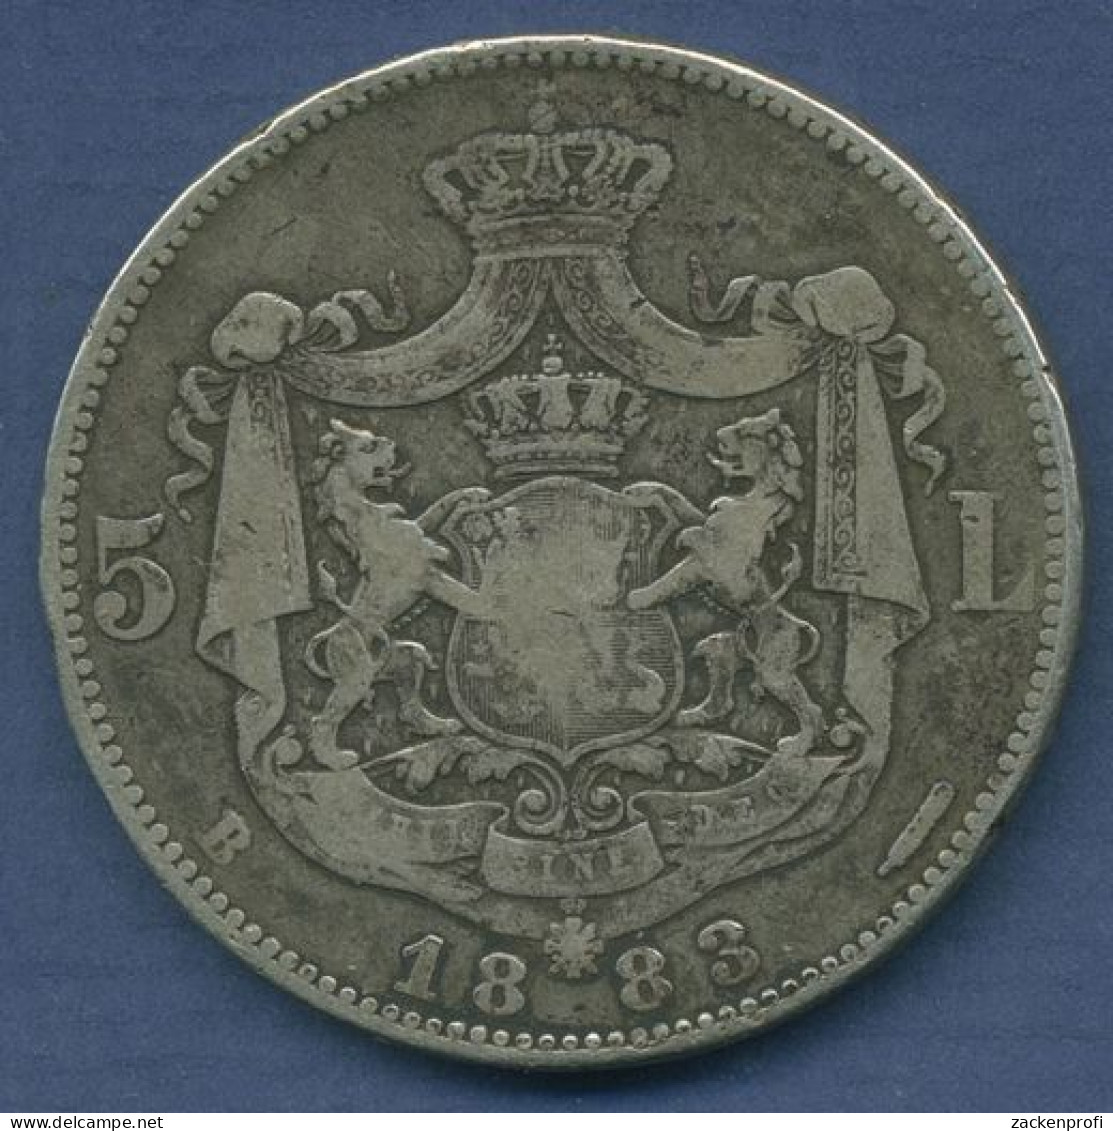 Rumänien 5 Lei 1883 B, Carol I., KM 17.1 Schön - Sehr Schön (m3937) - Roumanie